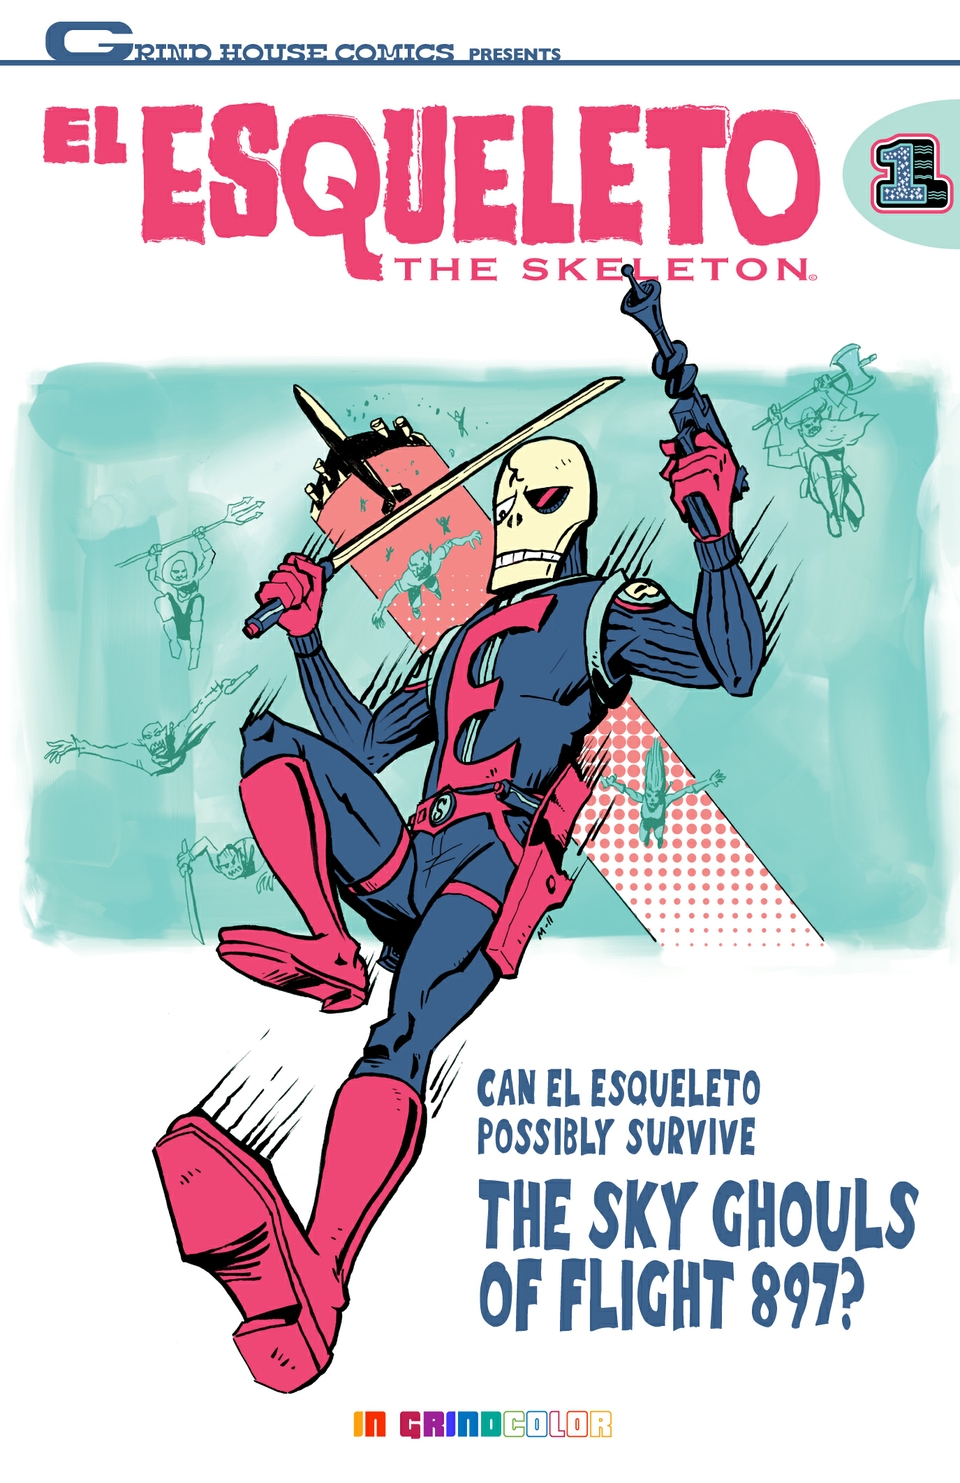 El Esqueleto issue #1 Cover